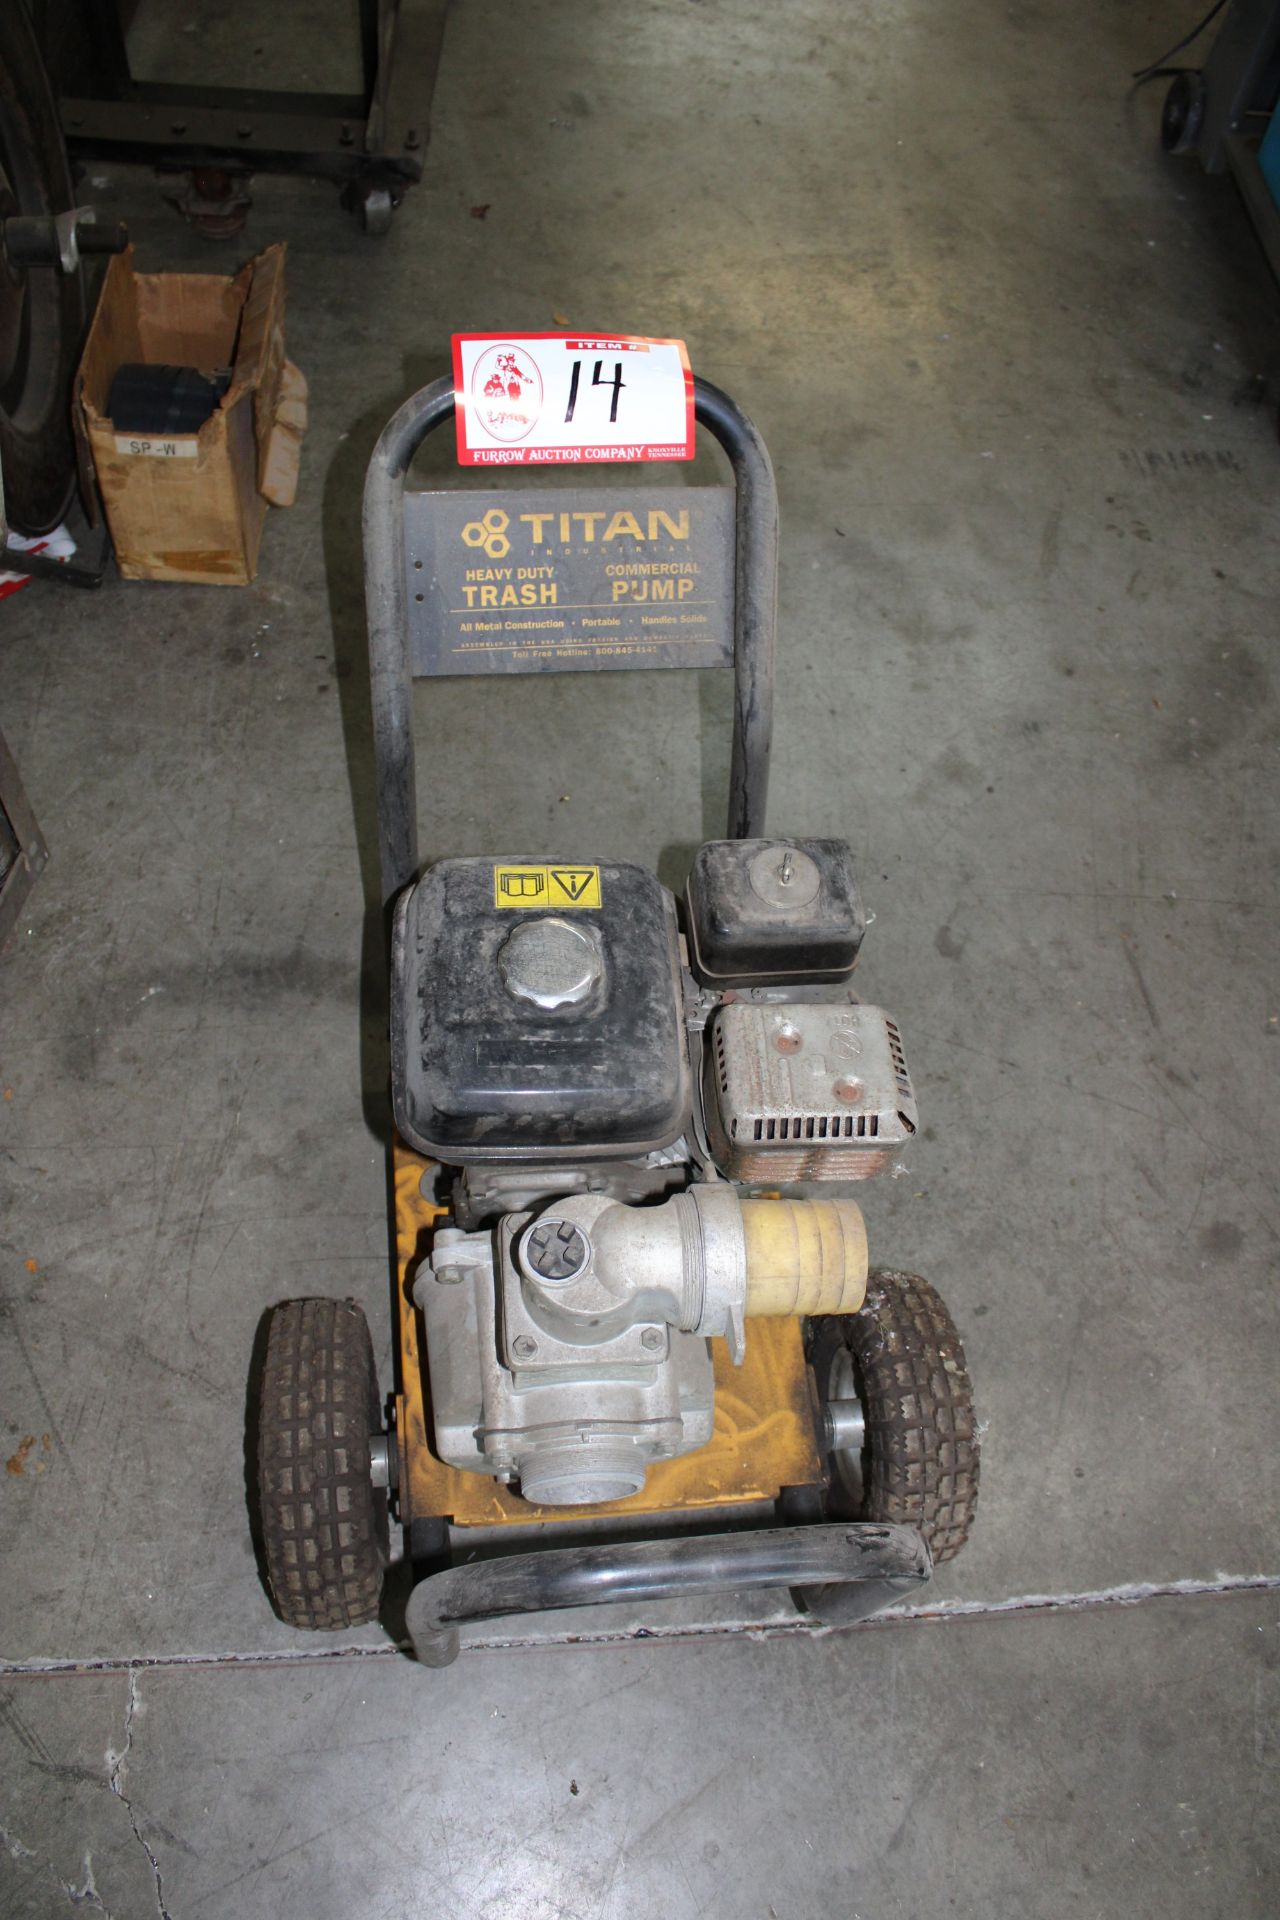 Titan 4" Trash Pump, Gas Engine